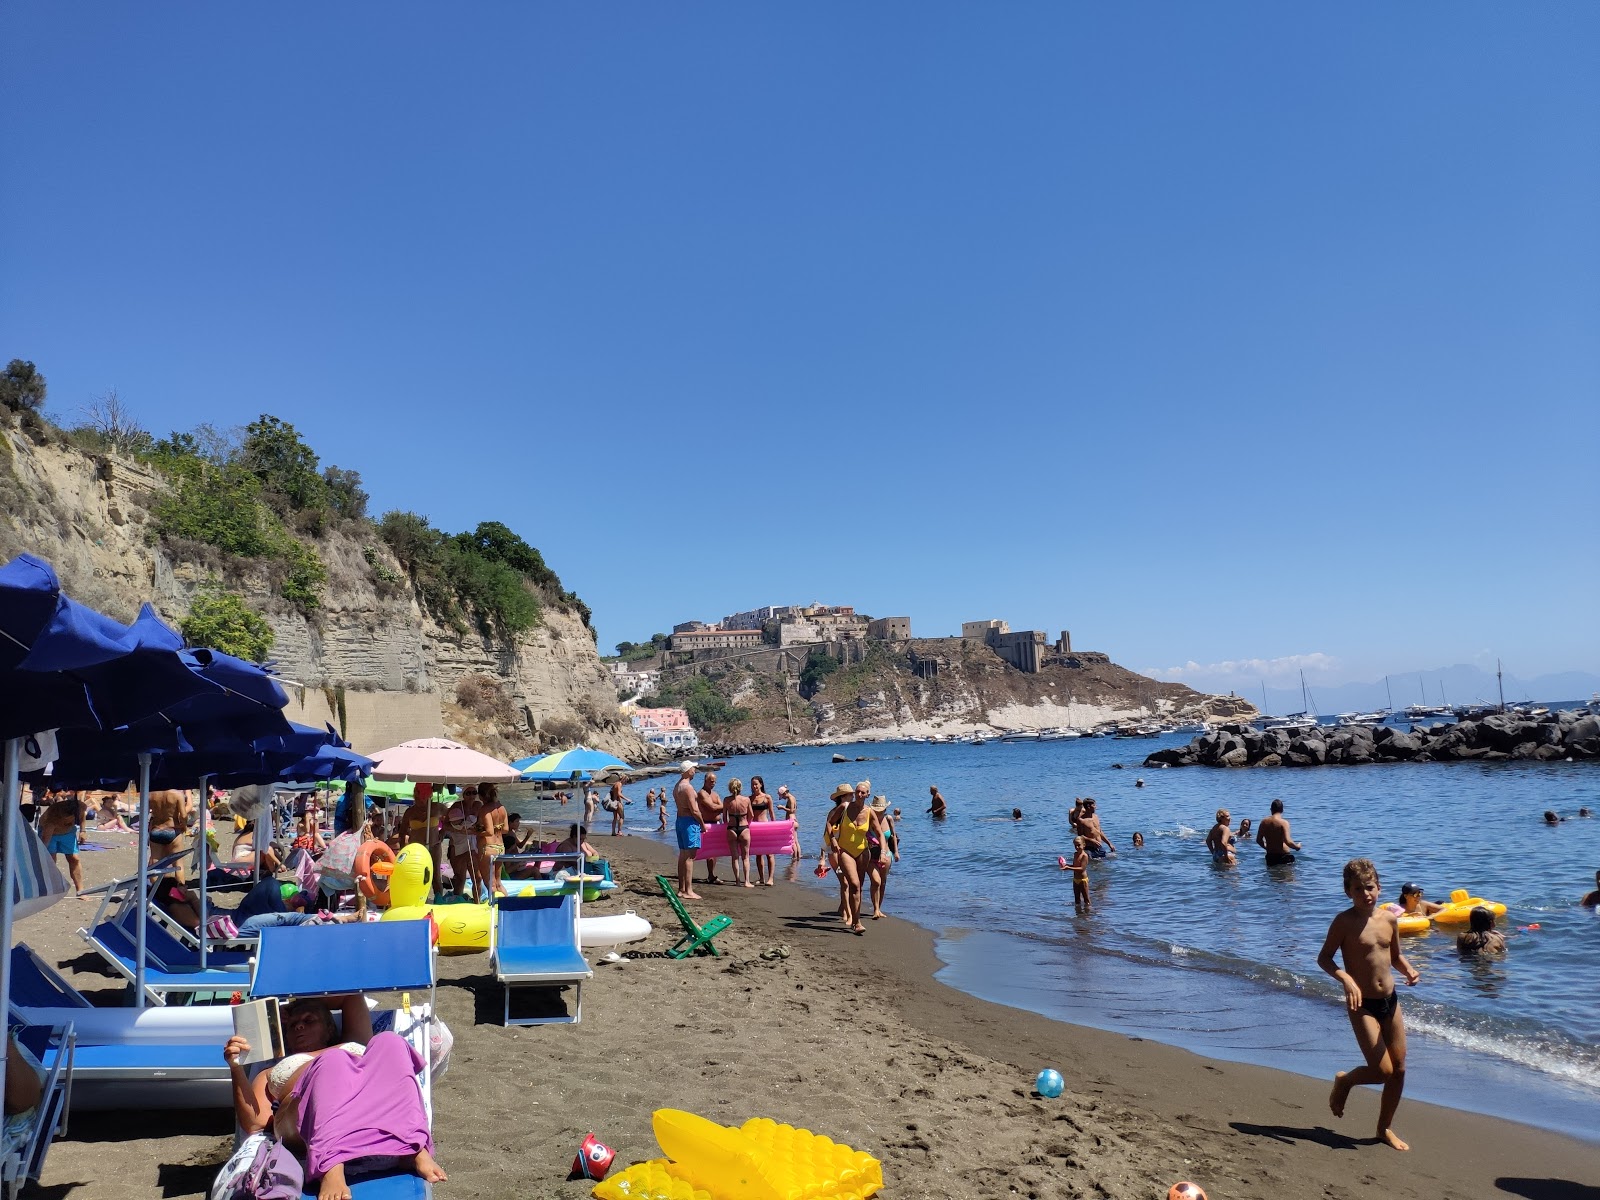 Photo of Spiaggia Chiaia with spacious shore